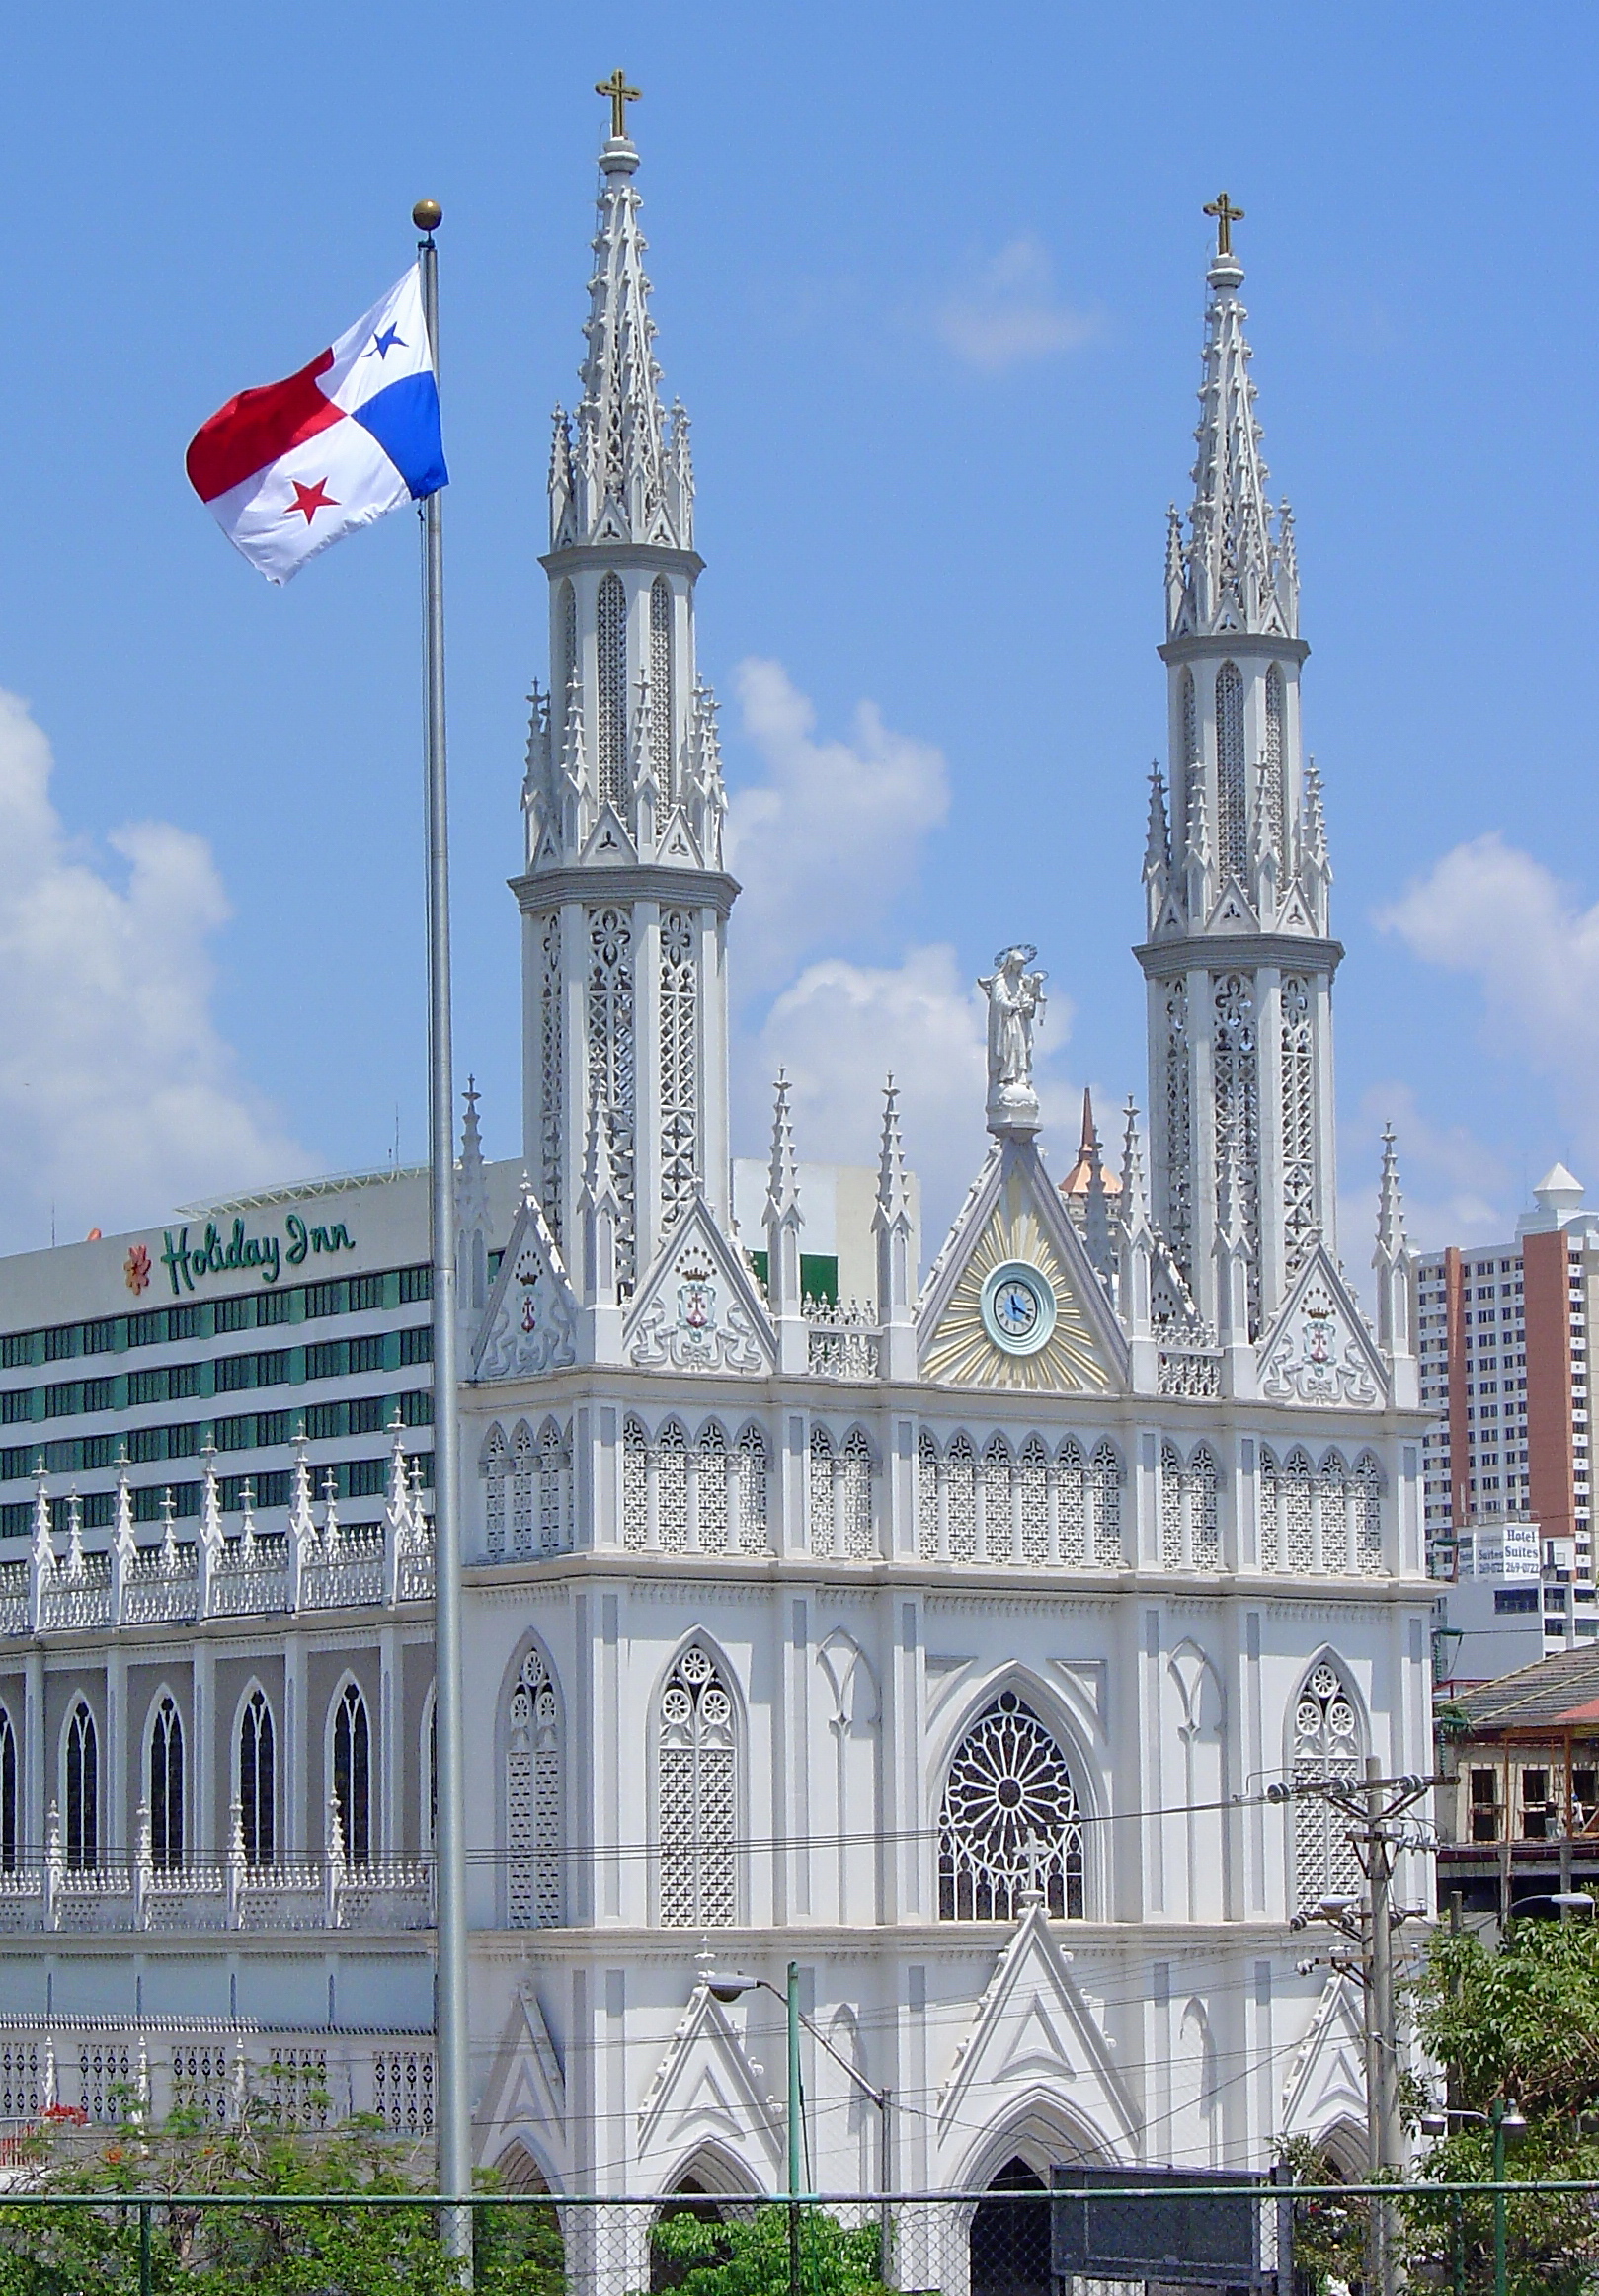  La Iglesia del Carmen در پاناما سیتی